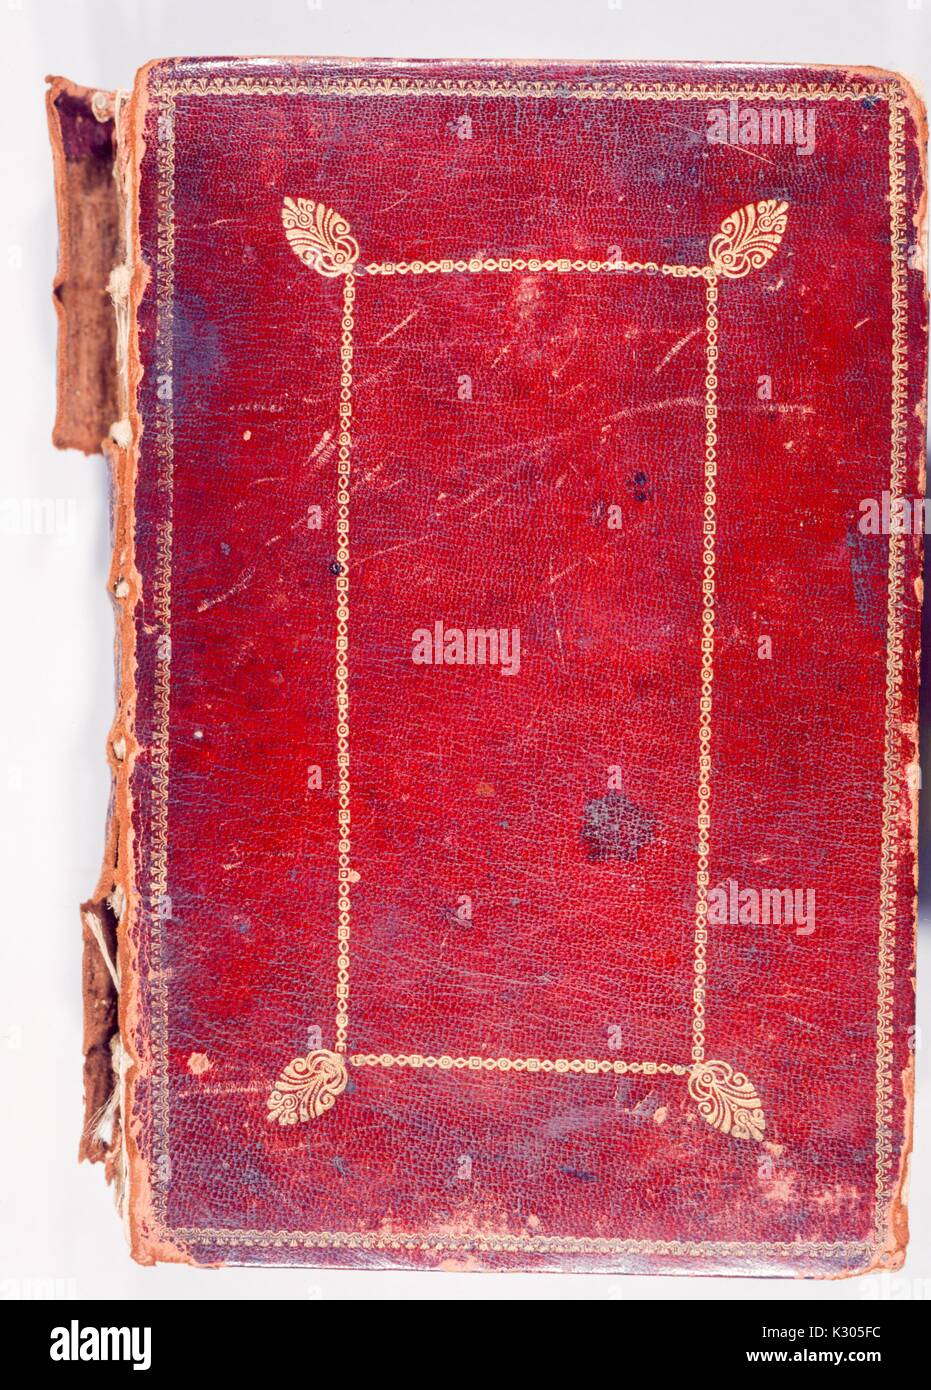 Abdeckung der bilderhandschrift, rot Leder mit gold Detaillierung, Bindung leicht Schälen, 2013. Stockfoto